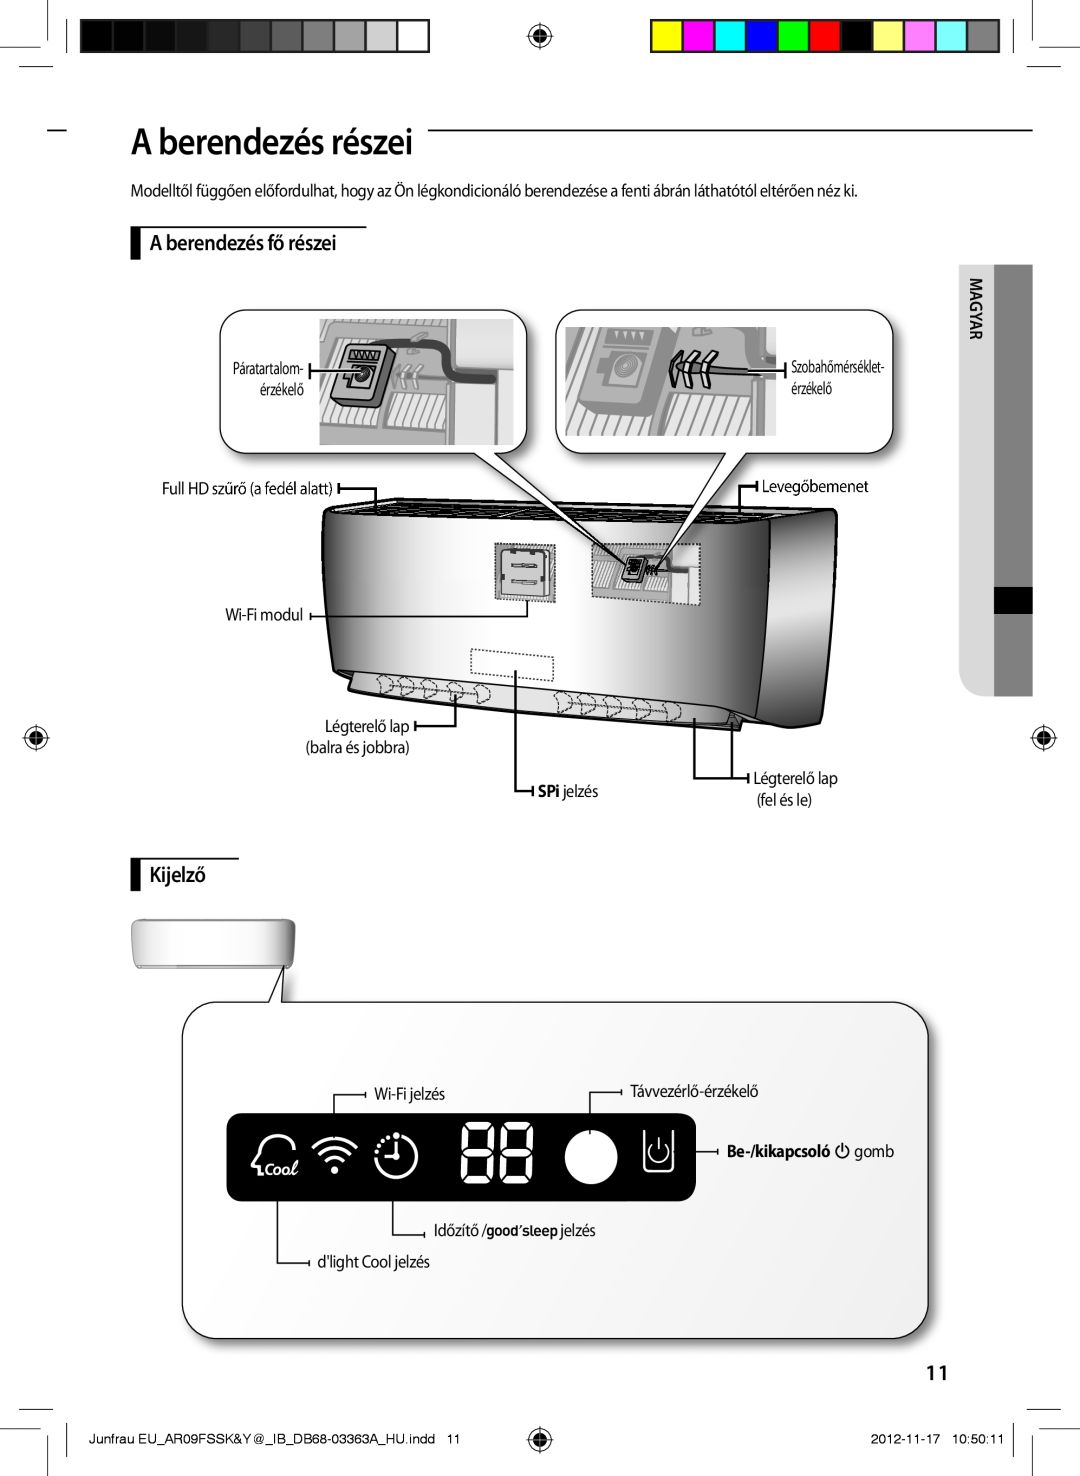 Samsung AR09FSSYAWTNEU manual A berendezés részei, A berendezés fő részei, Kijelző, Be-/kikapcsoló gomb, Magyar, 2012-11-17 